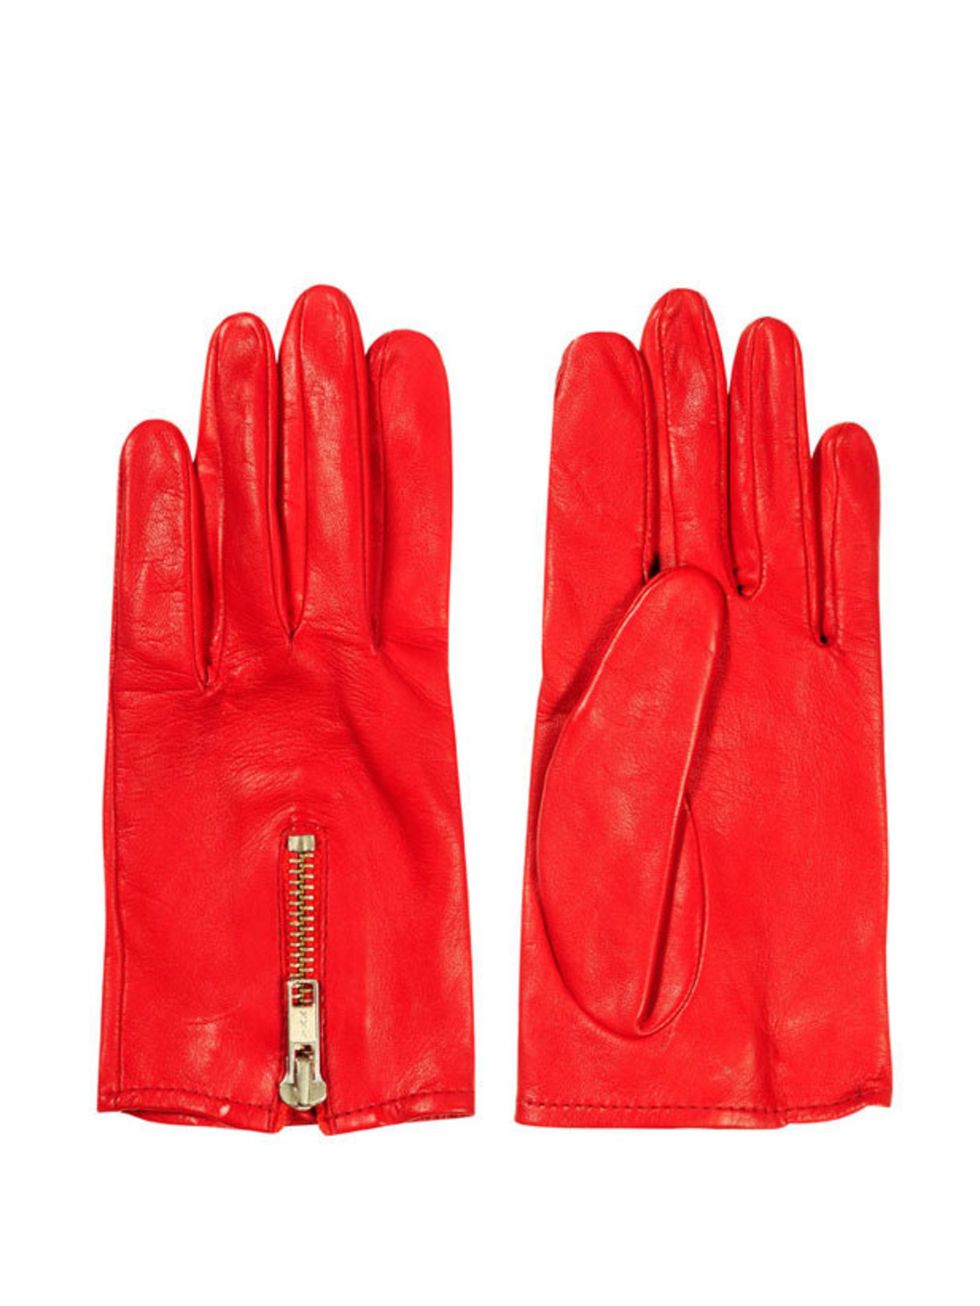 <p><a href="http://www.kurtgeiger.com/women/accessories/maya-glove-4.html">Kurt Geiger</a> red leather gloves, £65</p>